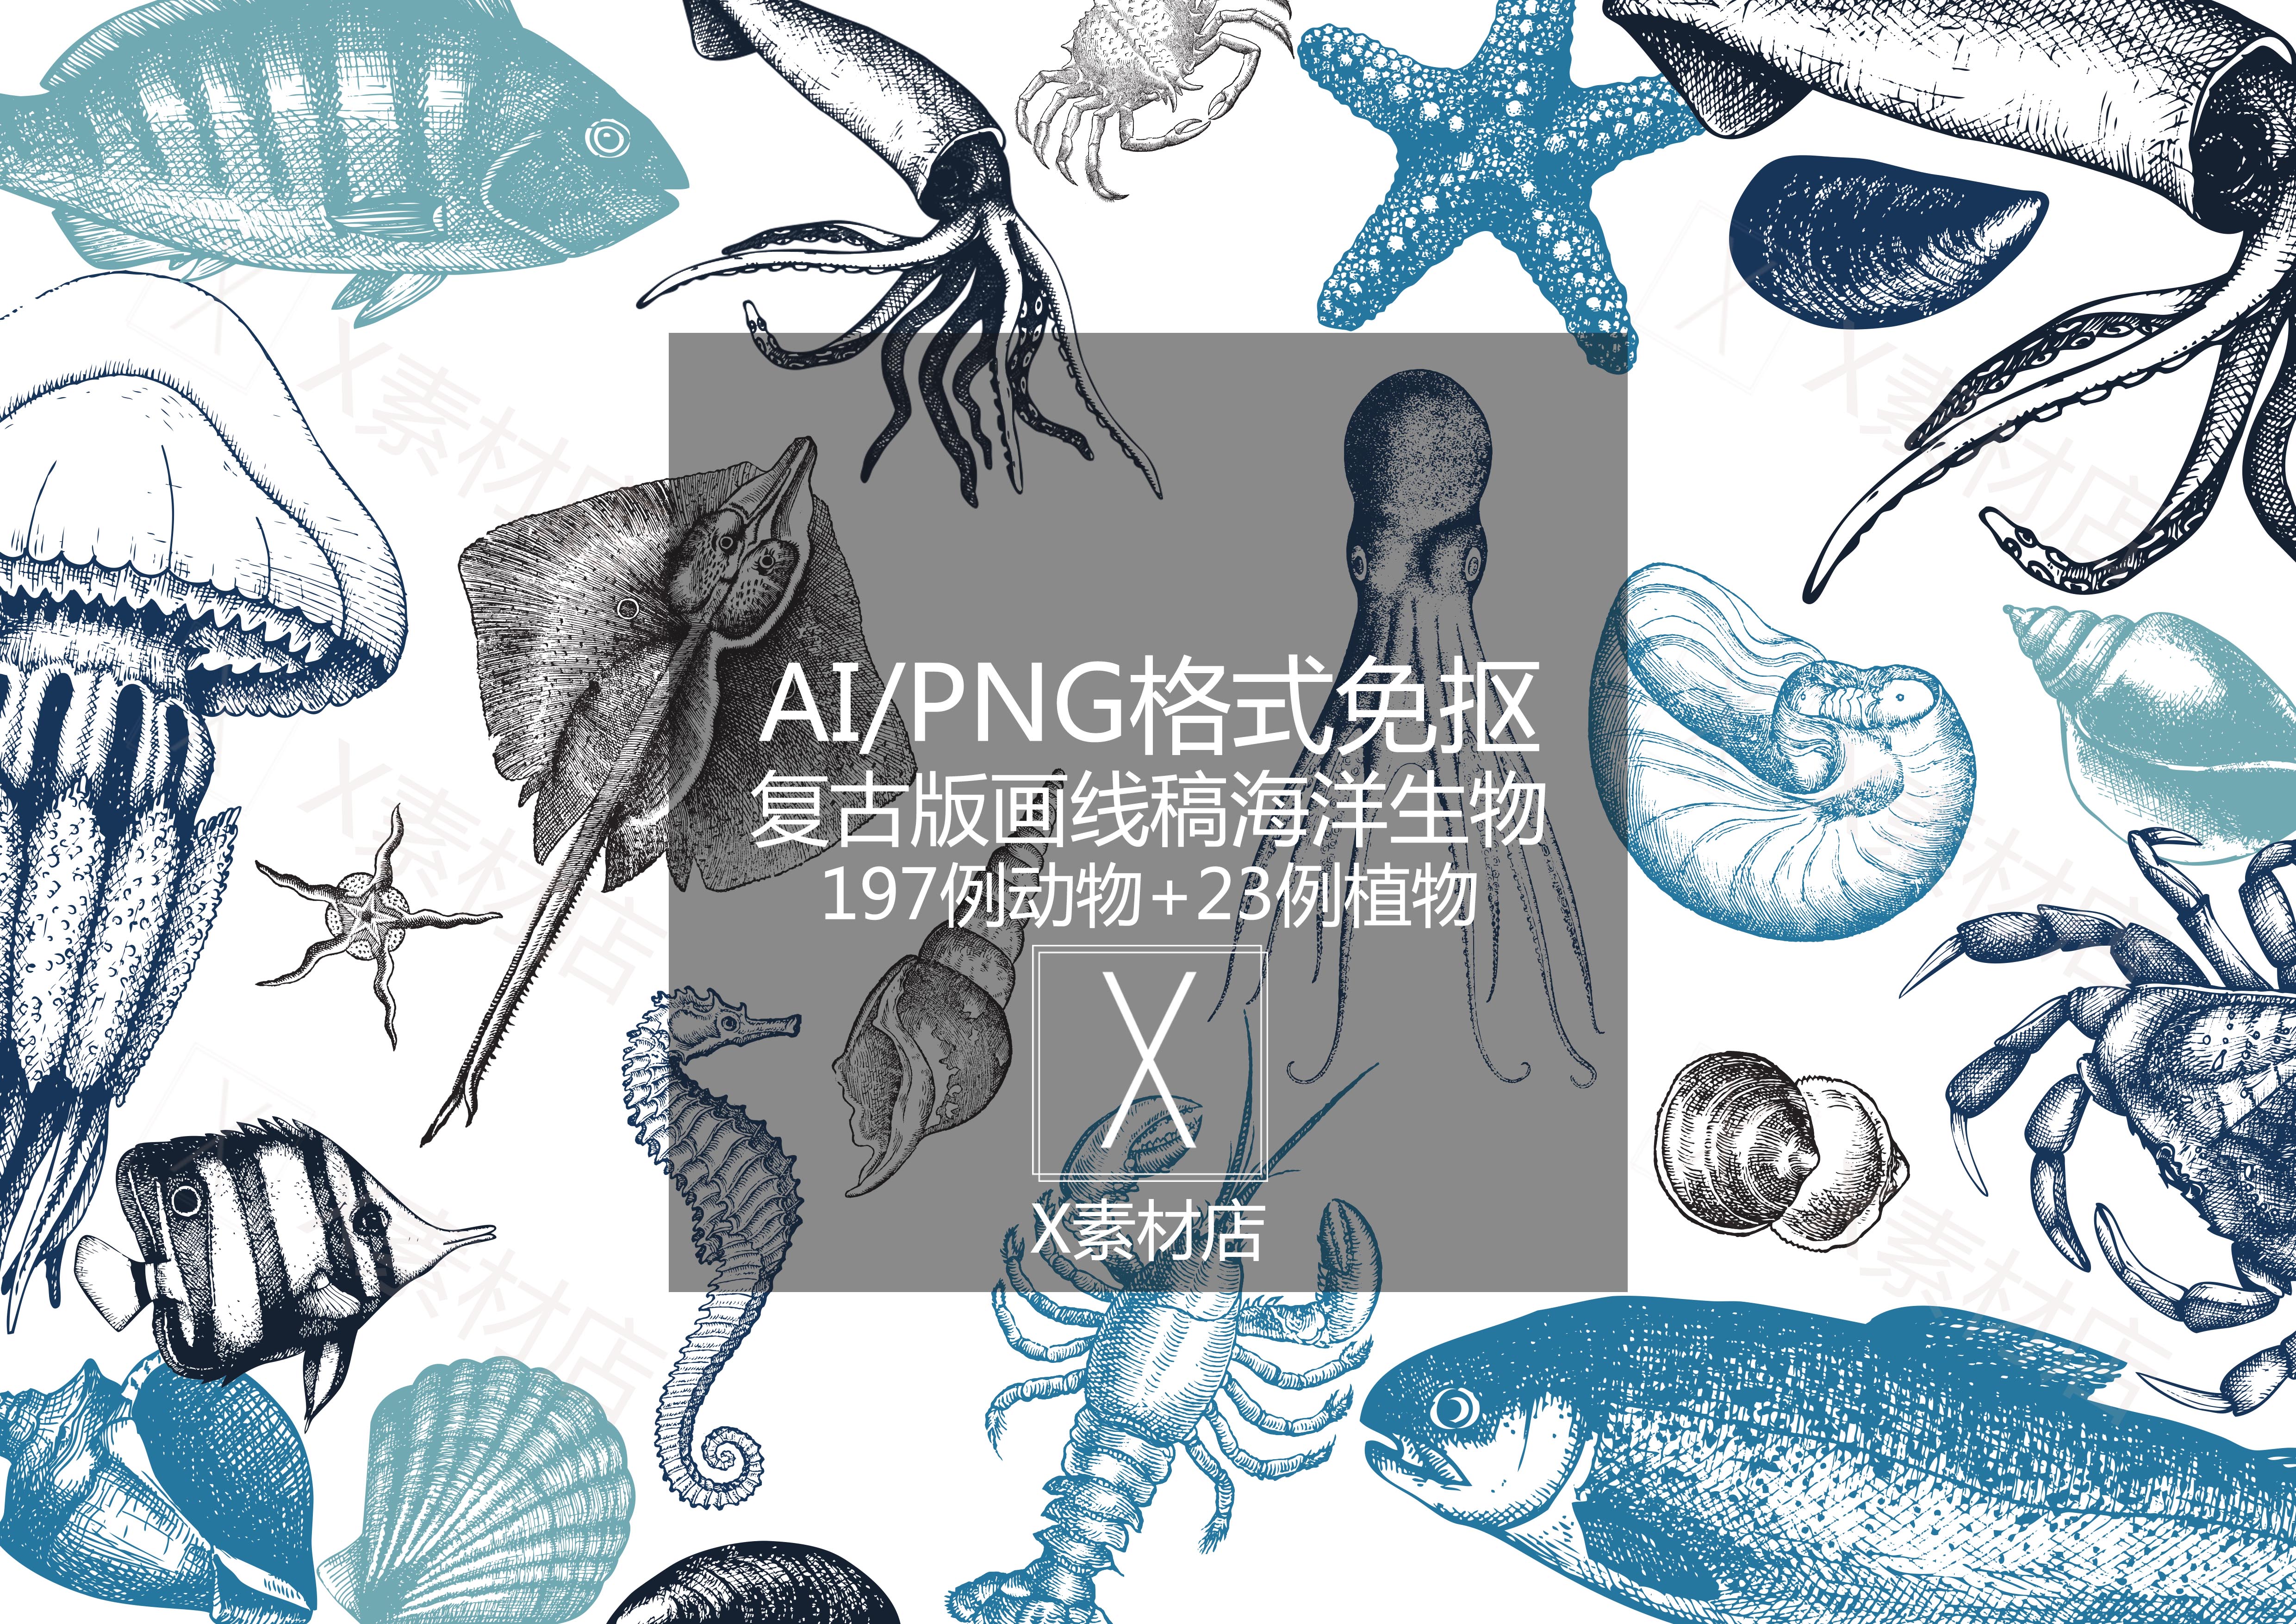 AI/PNG复古版画线稿 手绘海洋生物海藻虾蟹鱼贝壳素材拼贴collage